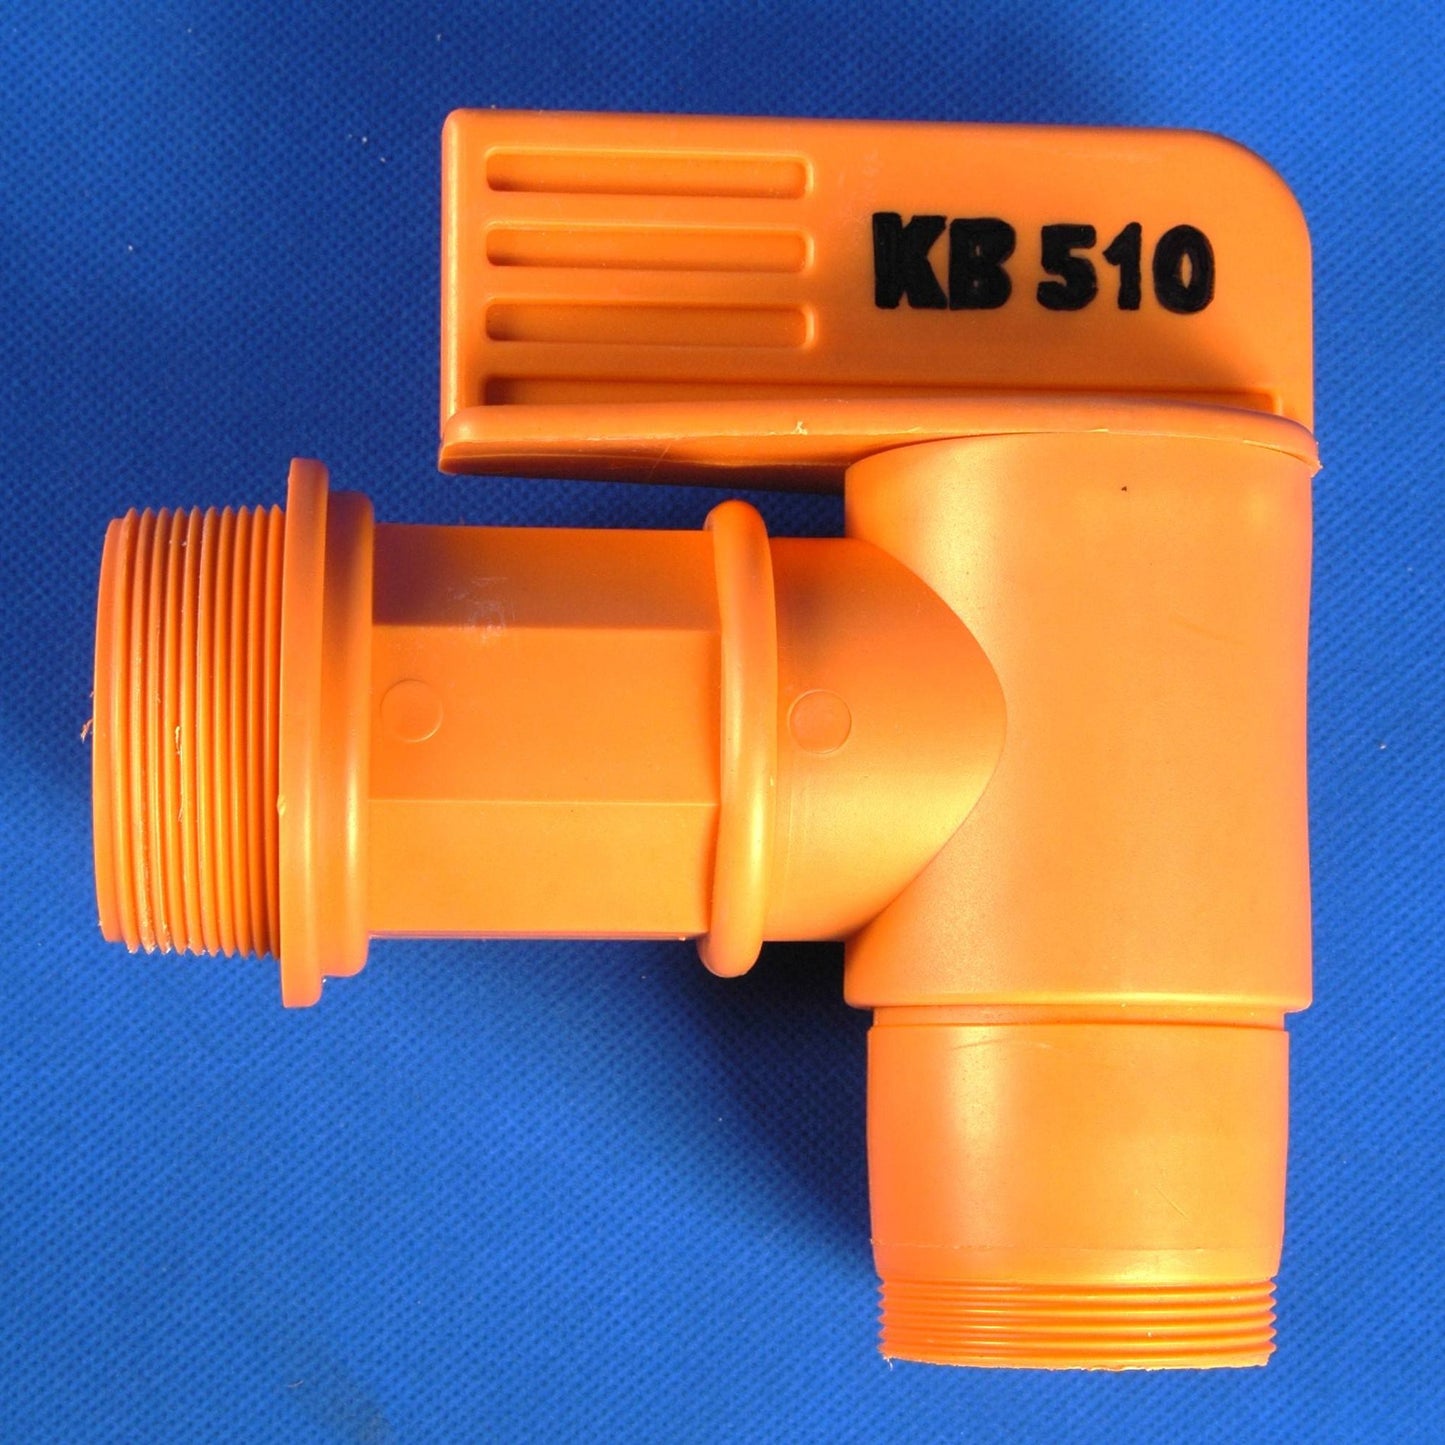 KB510 - 2" Faucet